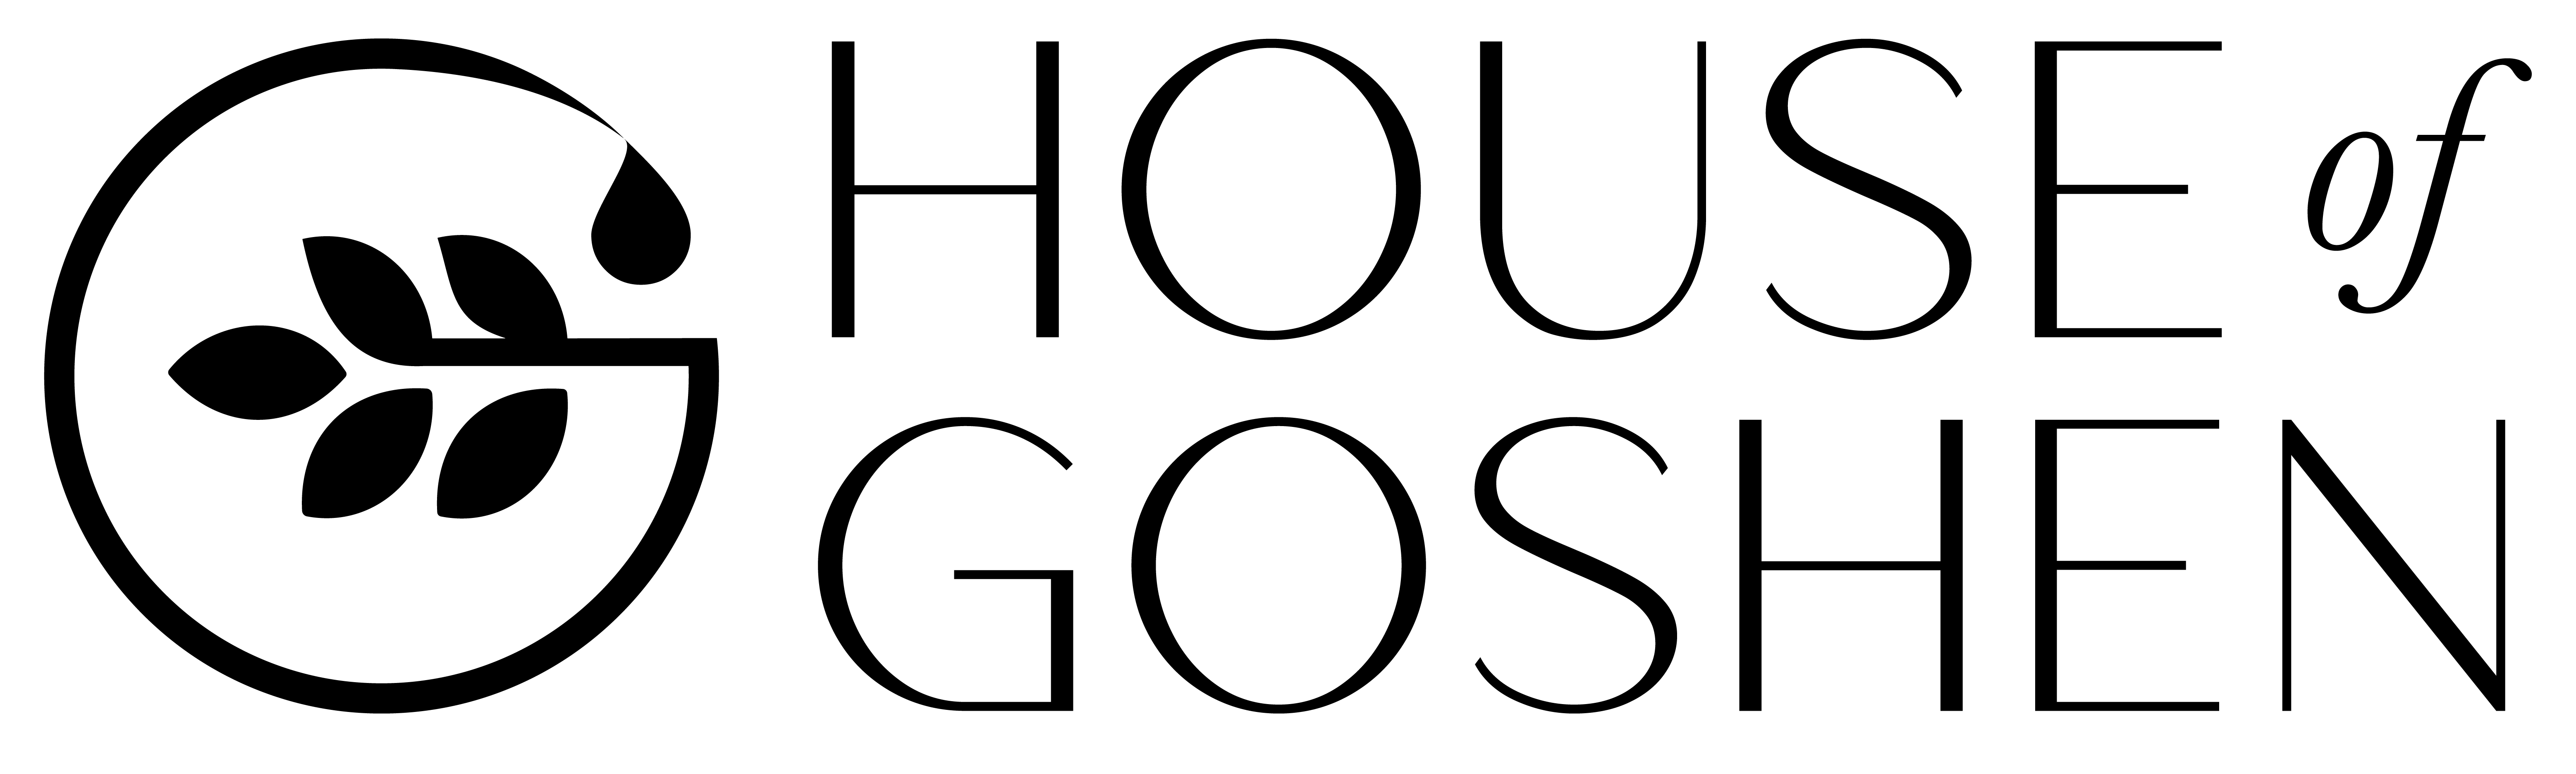 Wellpress logo